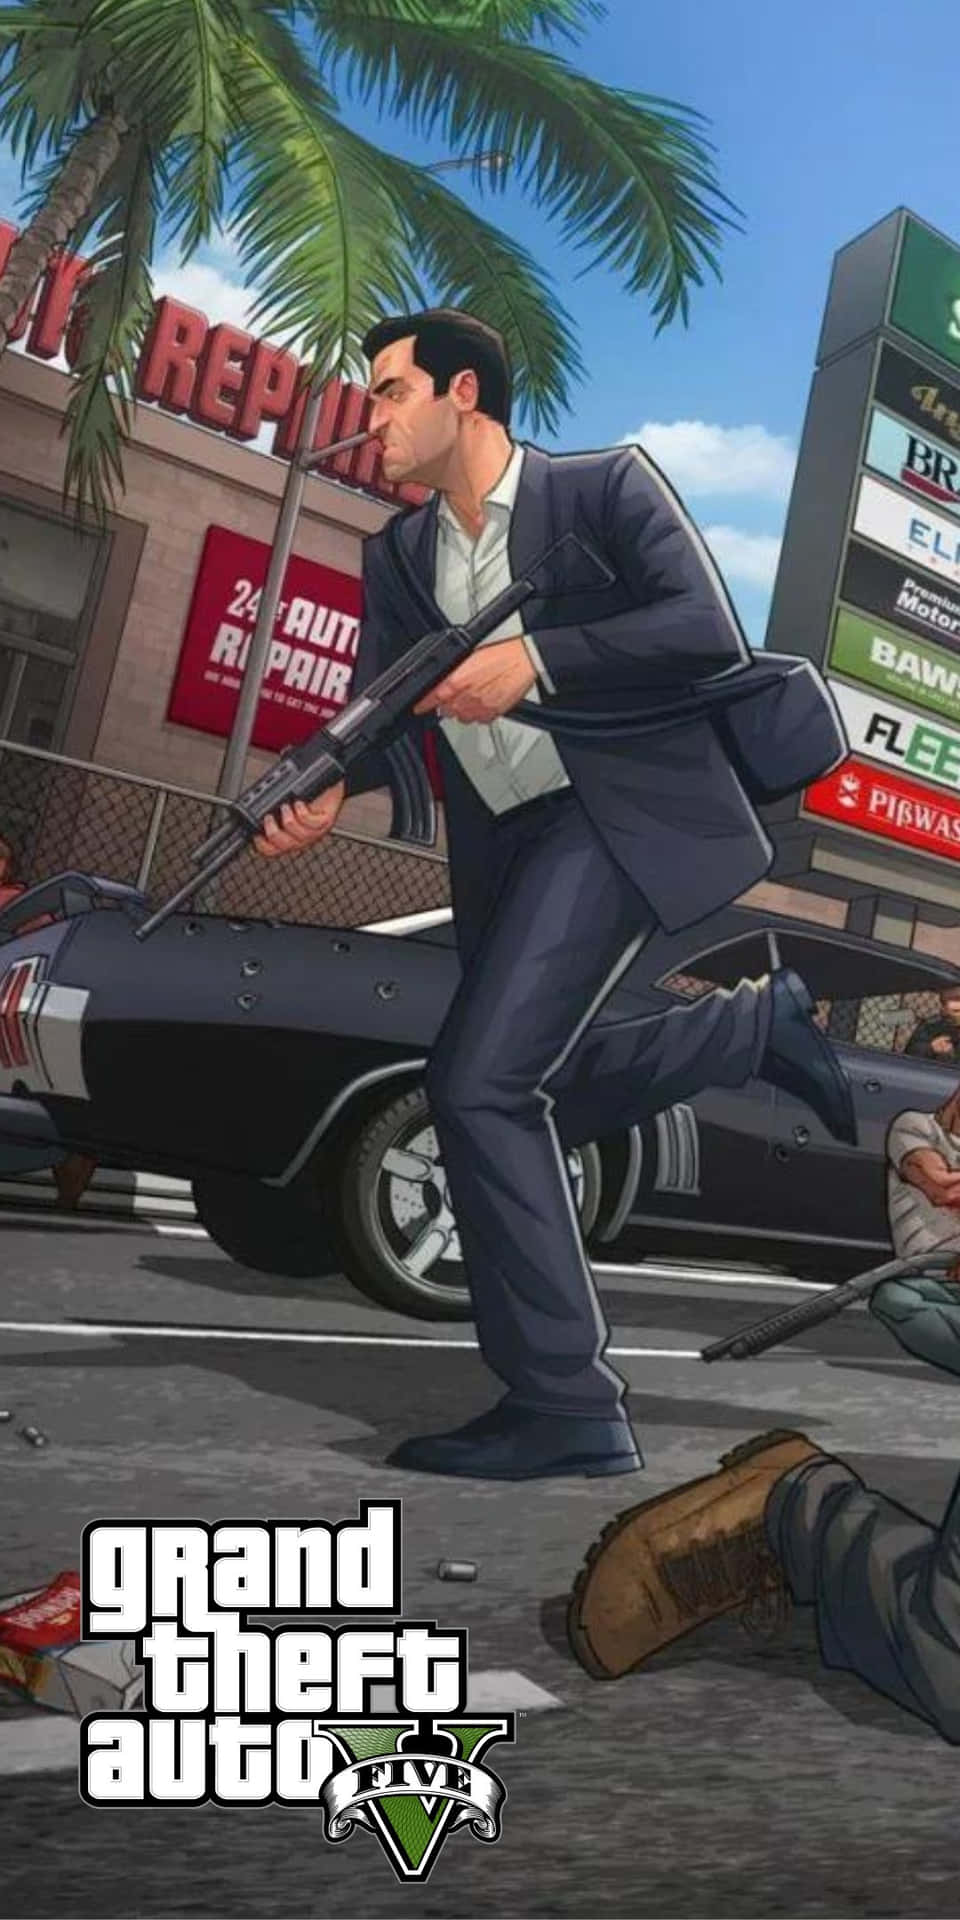 Pixel3 Bakgrundsbild Från Grand Theft Auto V.